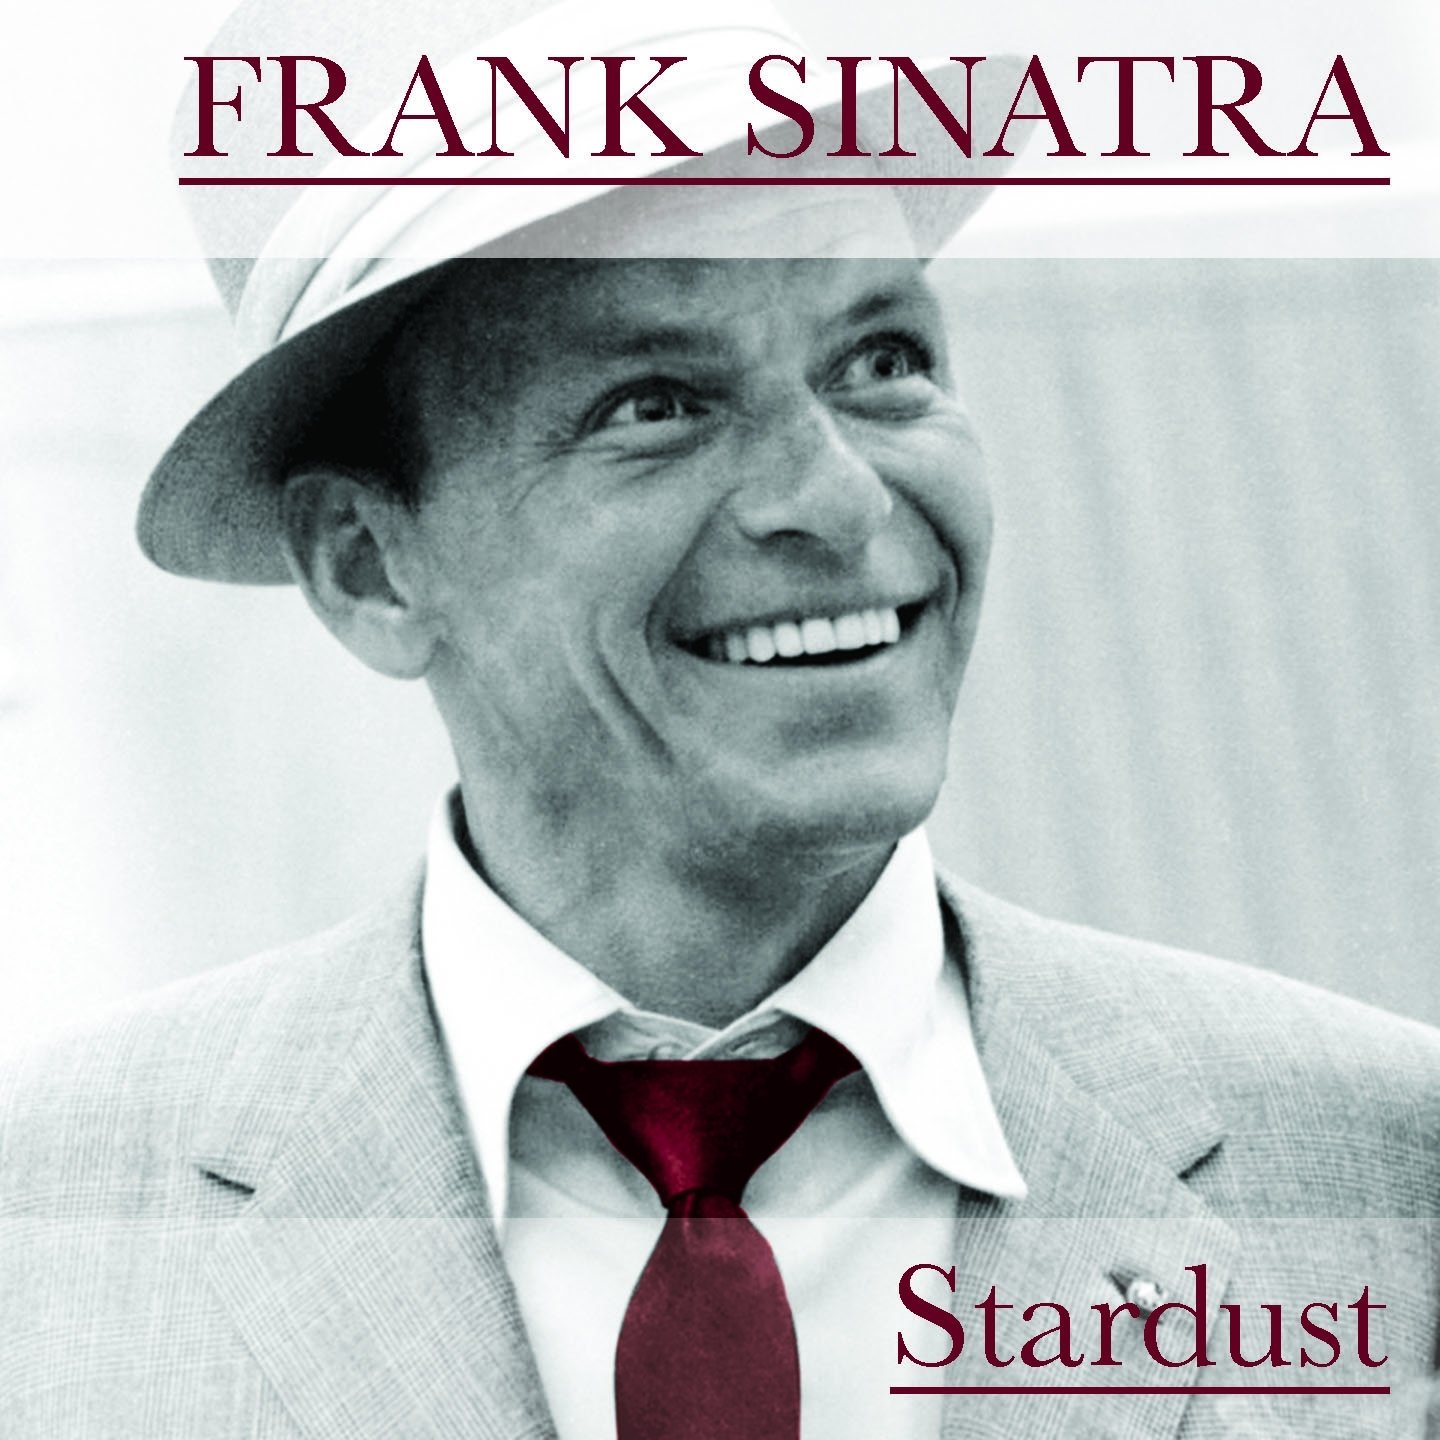 Фрэнк синатра хиты. Фрэнк Синатра обложка. Перри Комо и Синатра. Frank Sinatra & Charles Aznavour. Фрэнк Синатра альбомы.